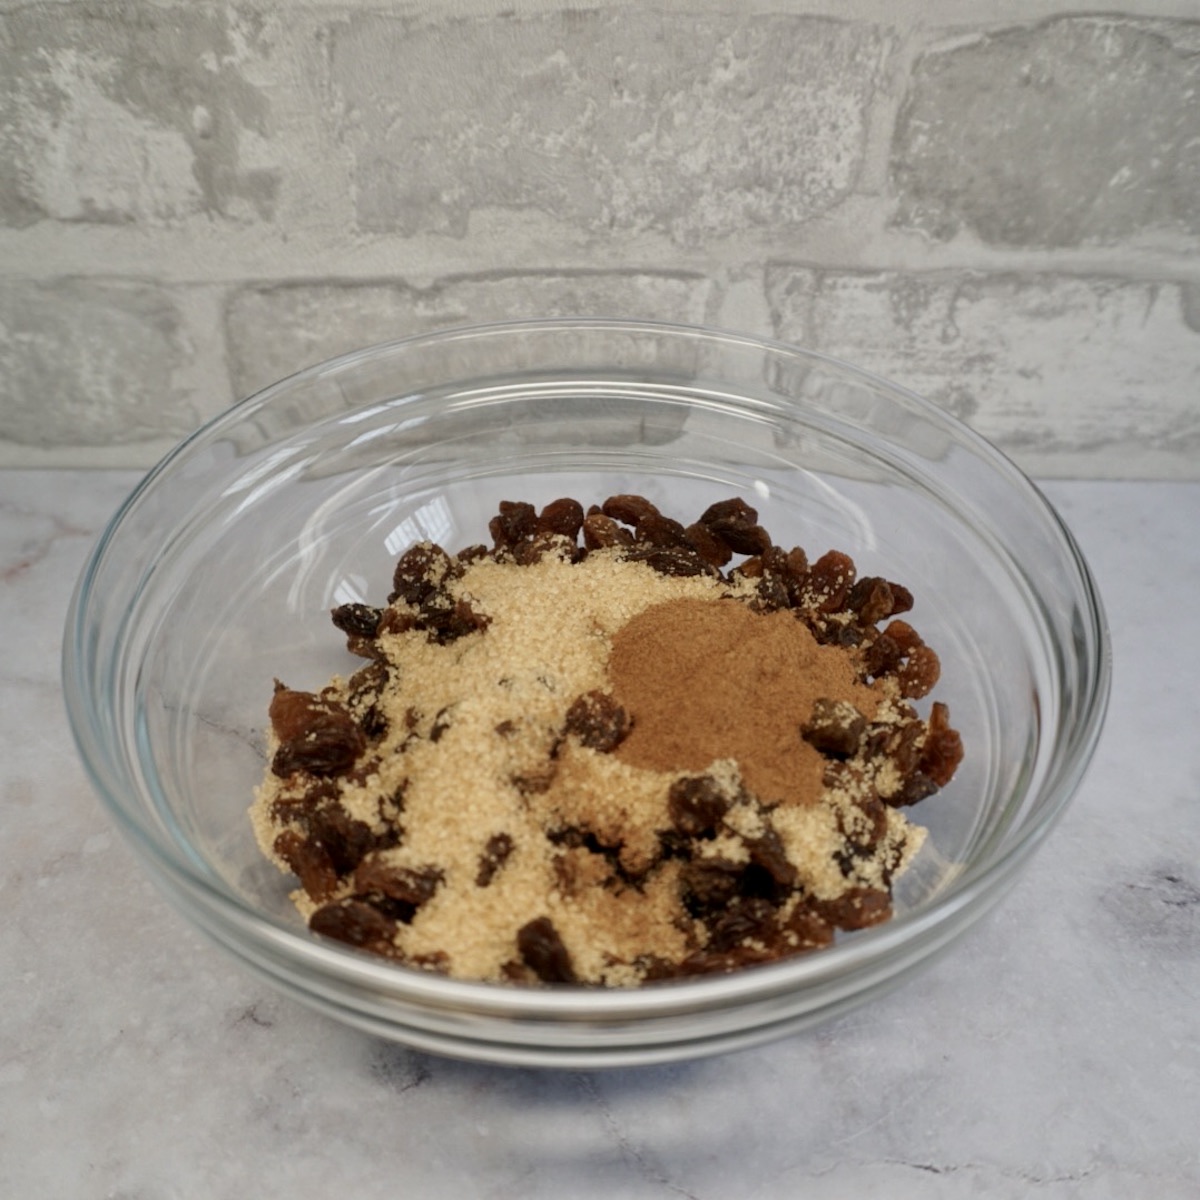 A bowl with raisins, brown sugar and cinnamon